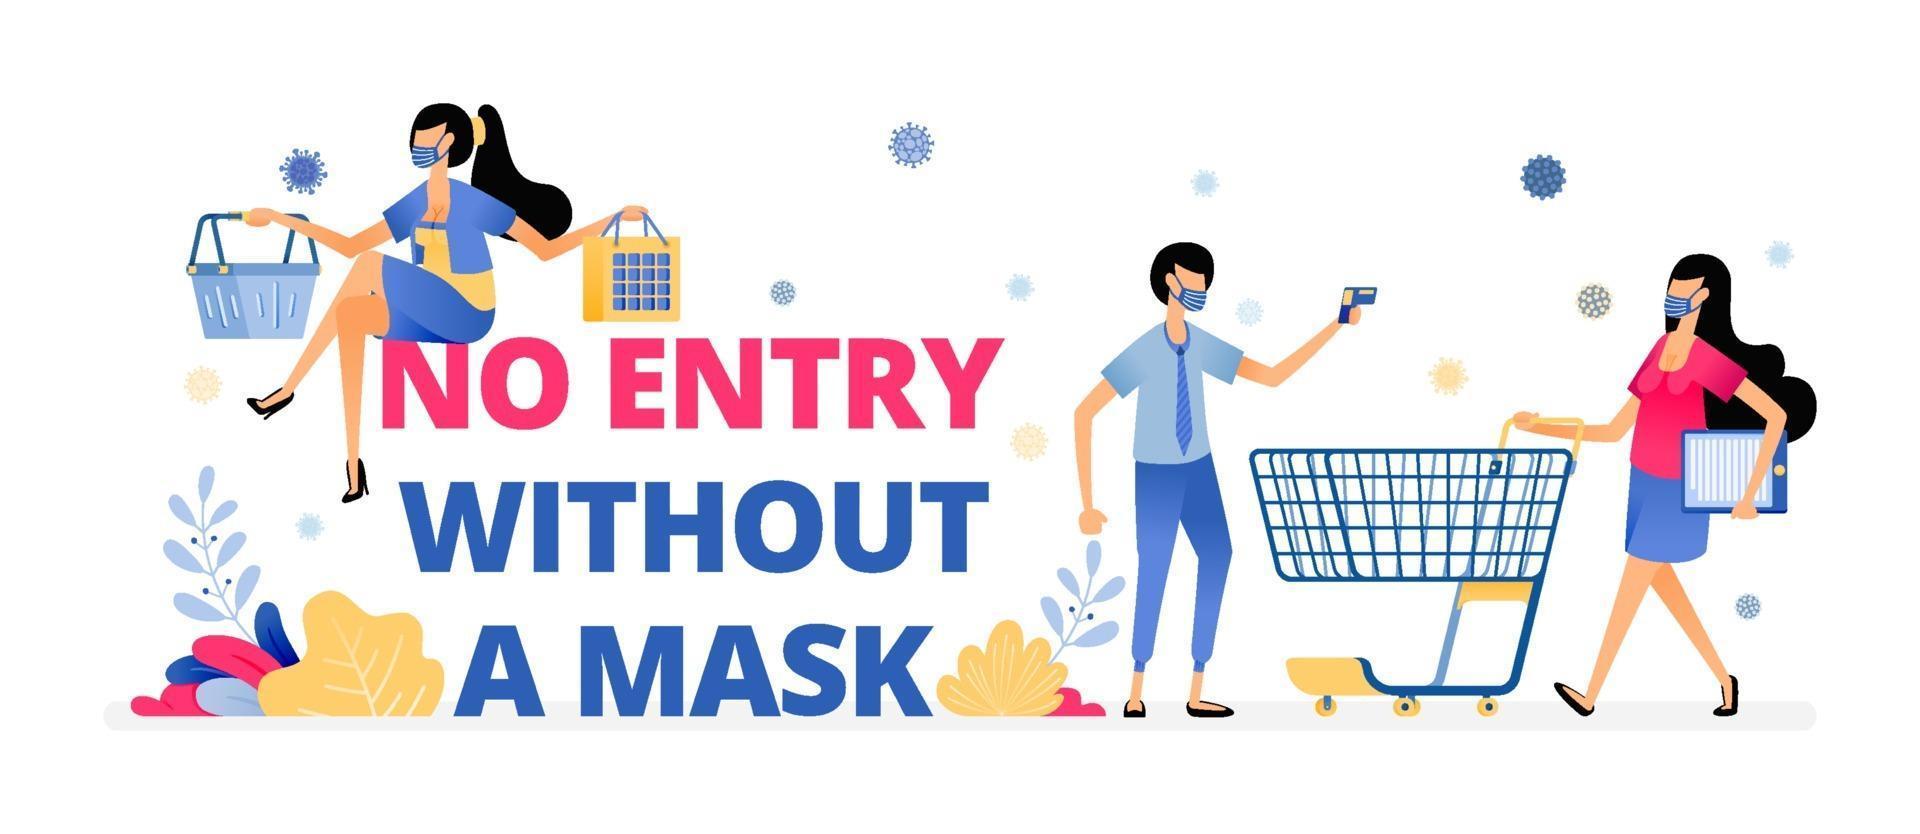 obligatoriskt varningsskylt för att bära en mask på marknaden och köpcentrum vektor